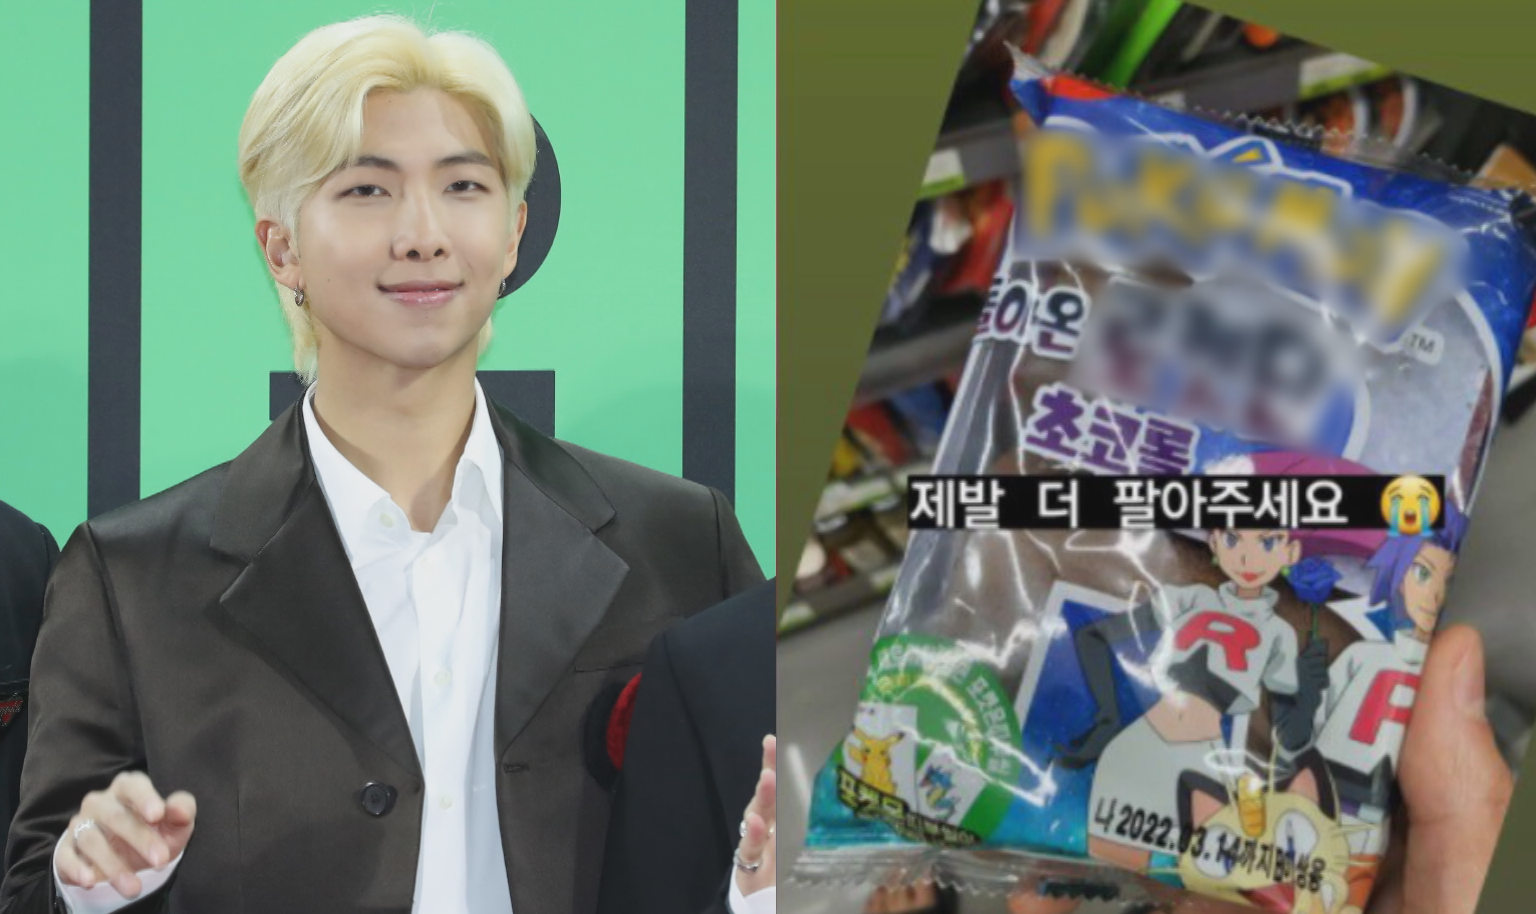 그룹 방탄소년단 멤버 RM도 자신의 인스타그램에 포켓몬빵 구매 ‘인증샷’을 올렸다. 출처: 방탄소년단 RM 인스타그램